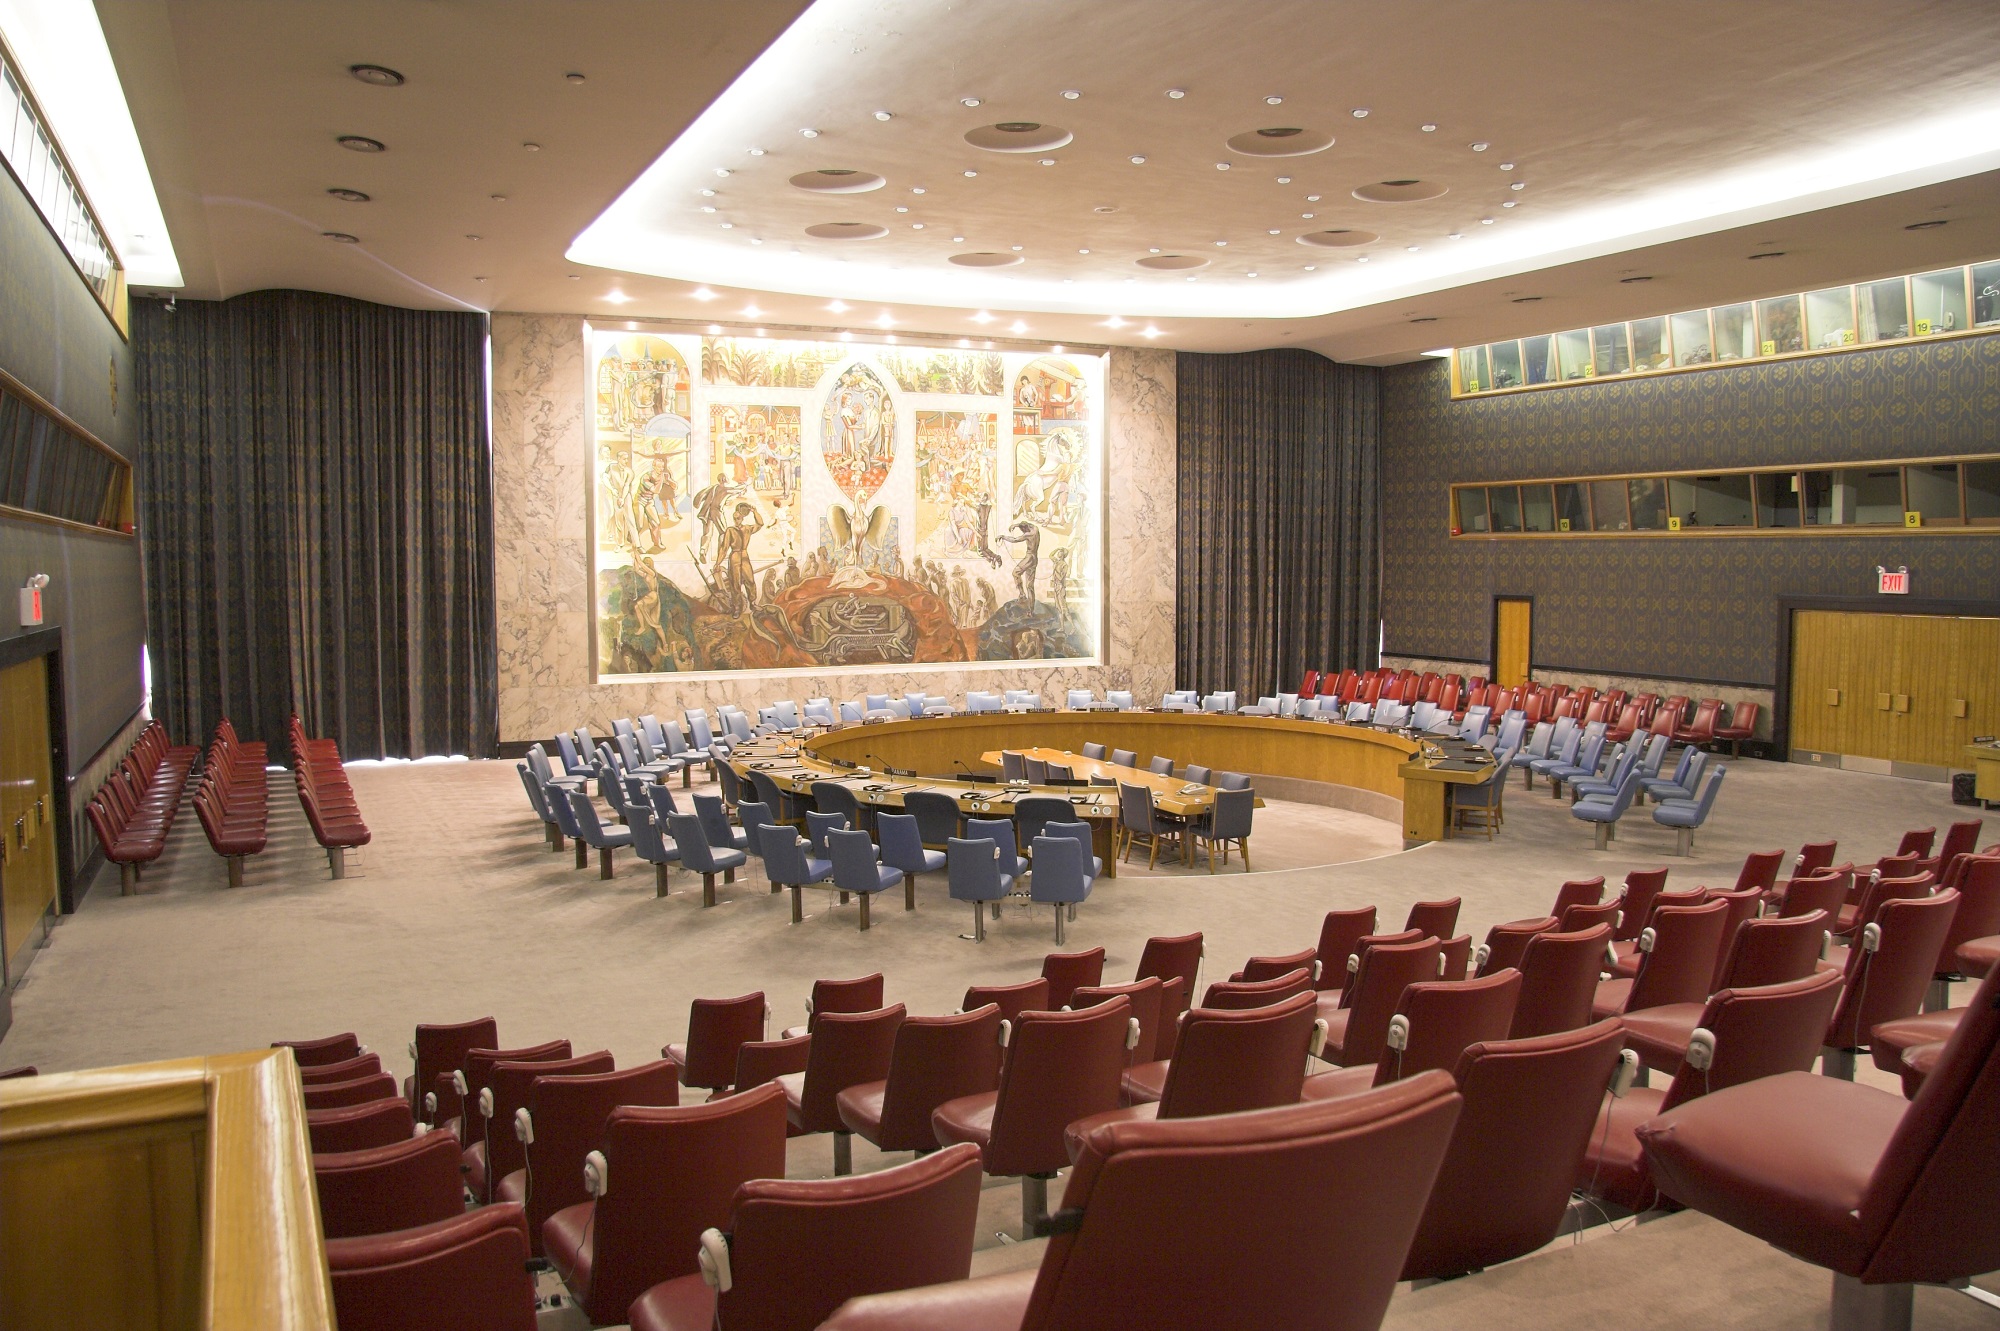 قاعة مجلس الأمن الدولي في مقر الأمم المتحدة في نيويورك. (shutterstock)